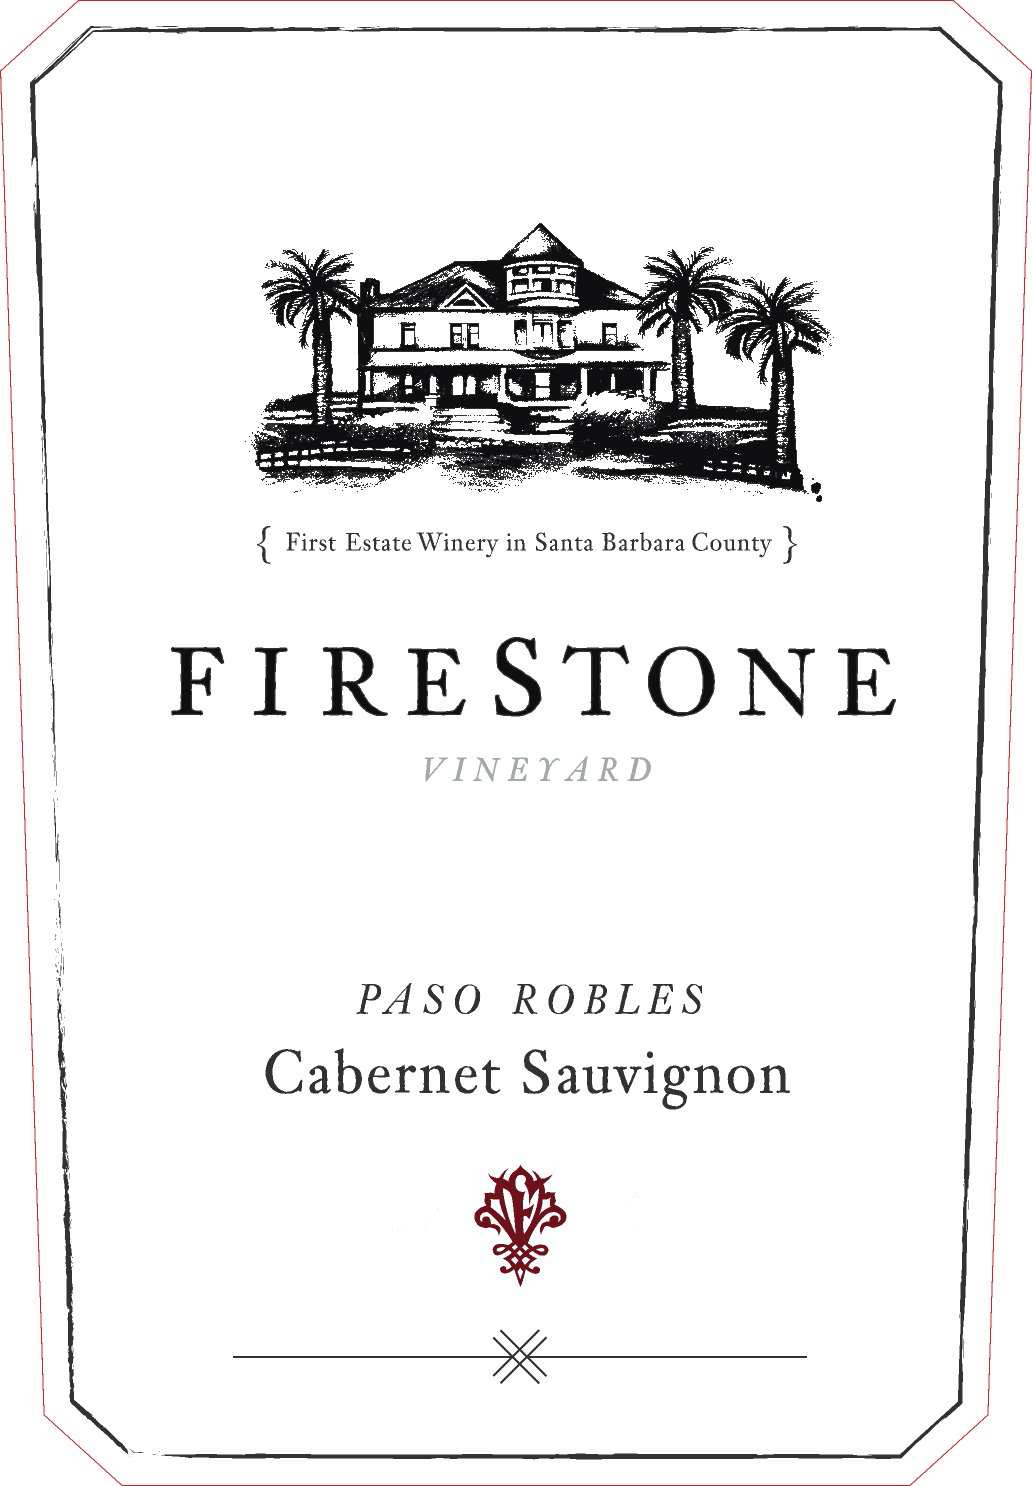 Firestone - Cabernet Sauvignon label